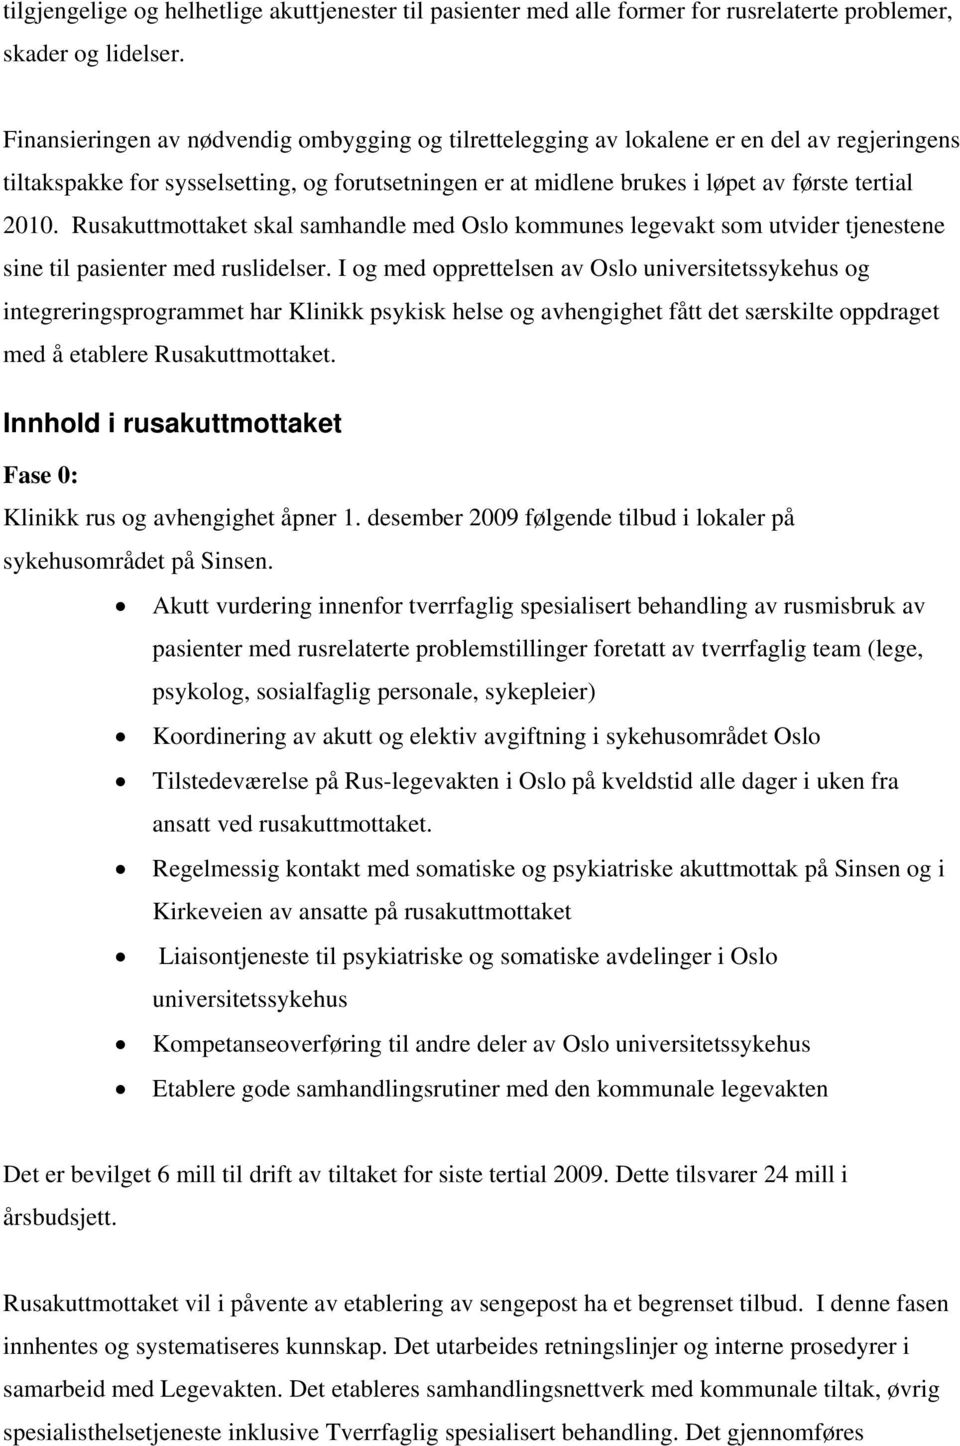 Rusakuttmottaket skal samhandle med Oslo kommunes legevakt som utvider tjenestene sine til pasienter med ruslidelser.